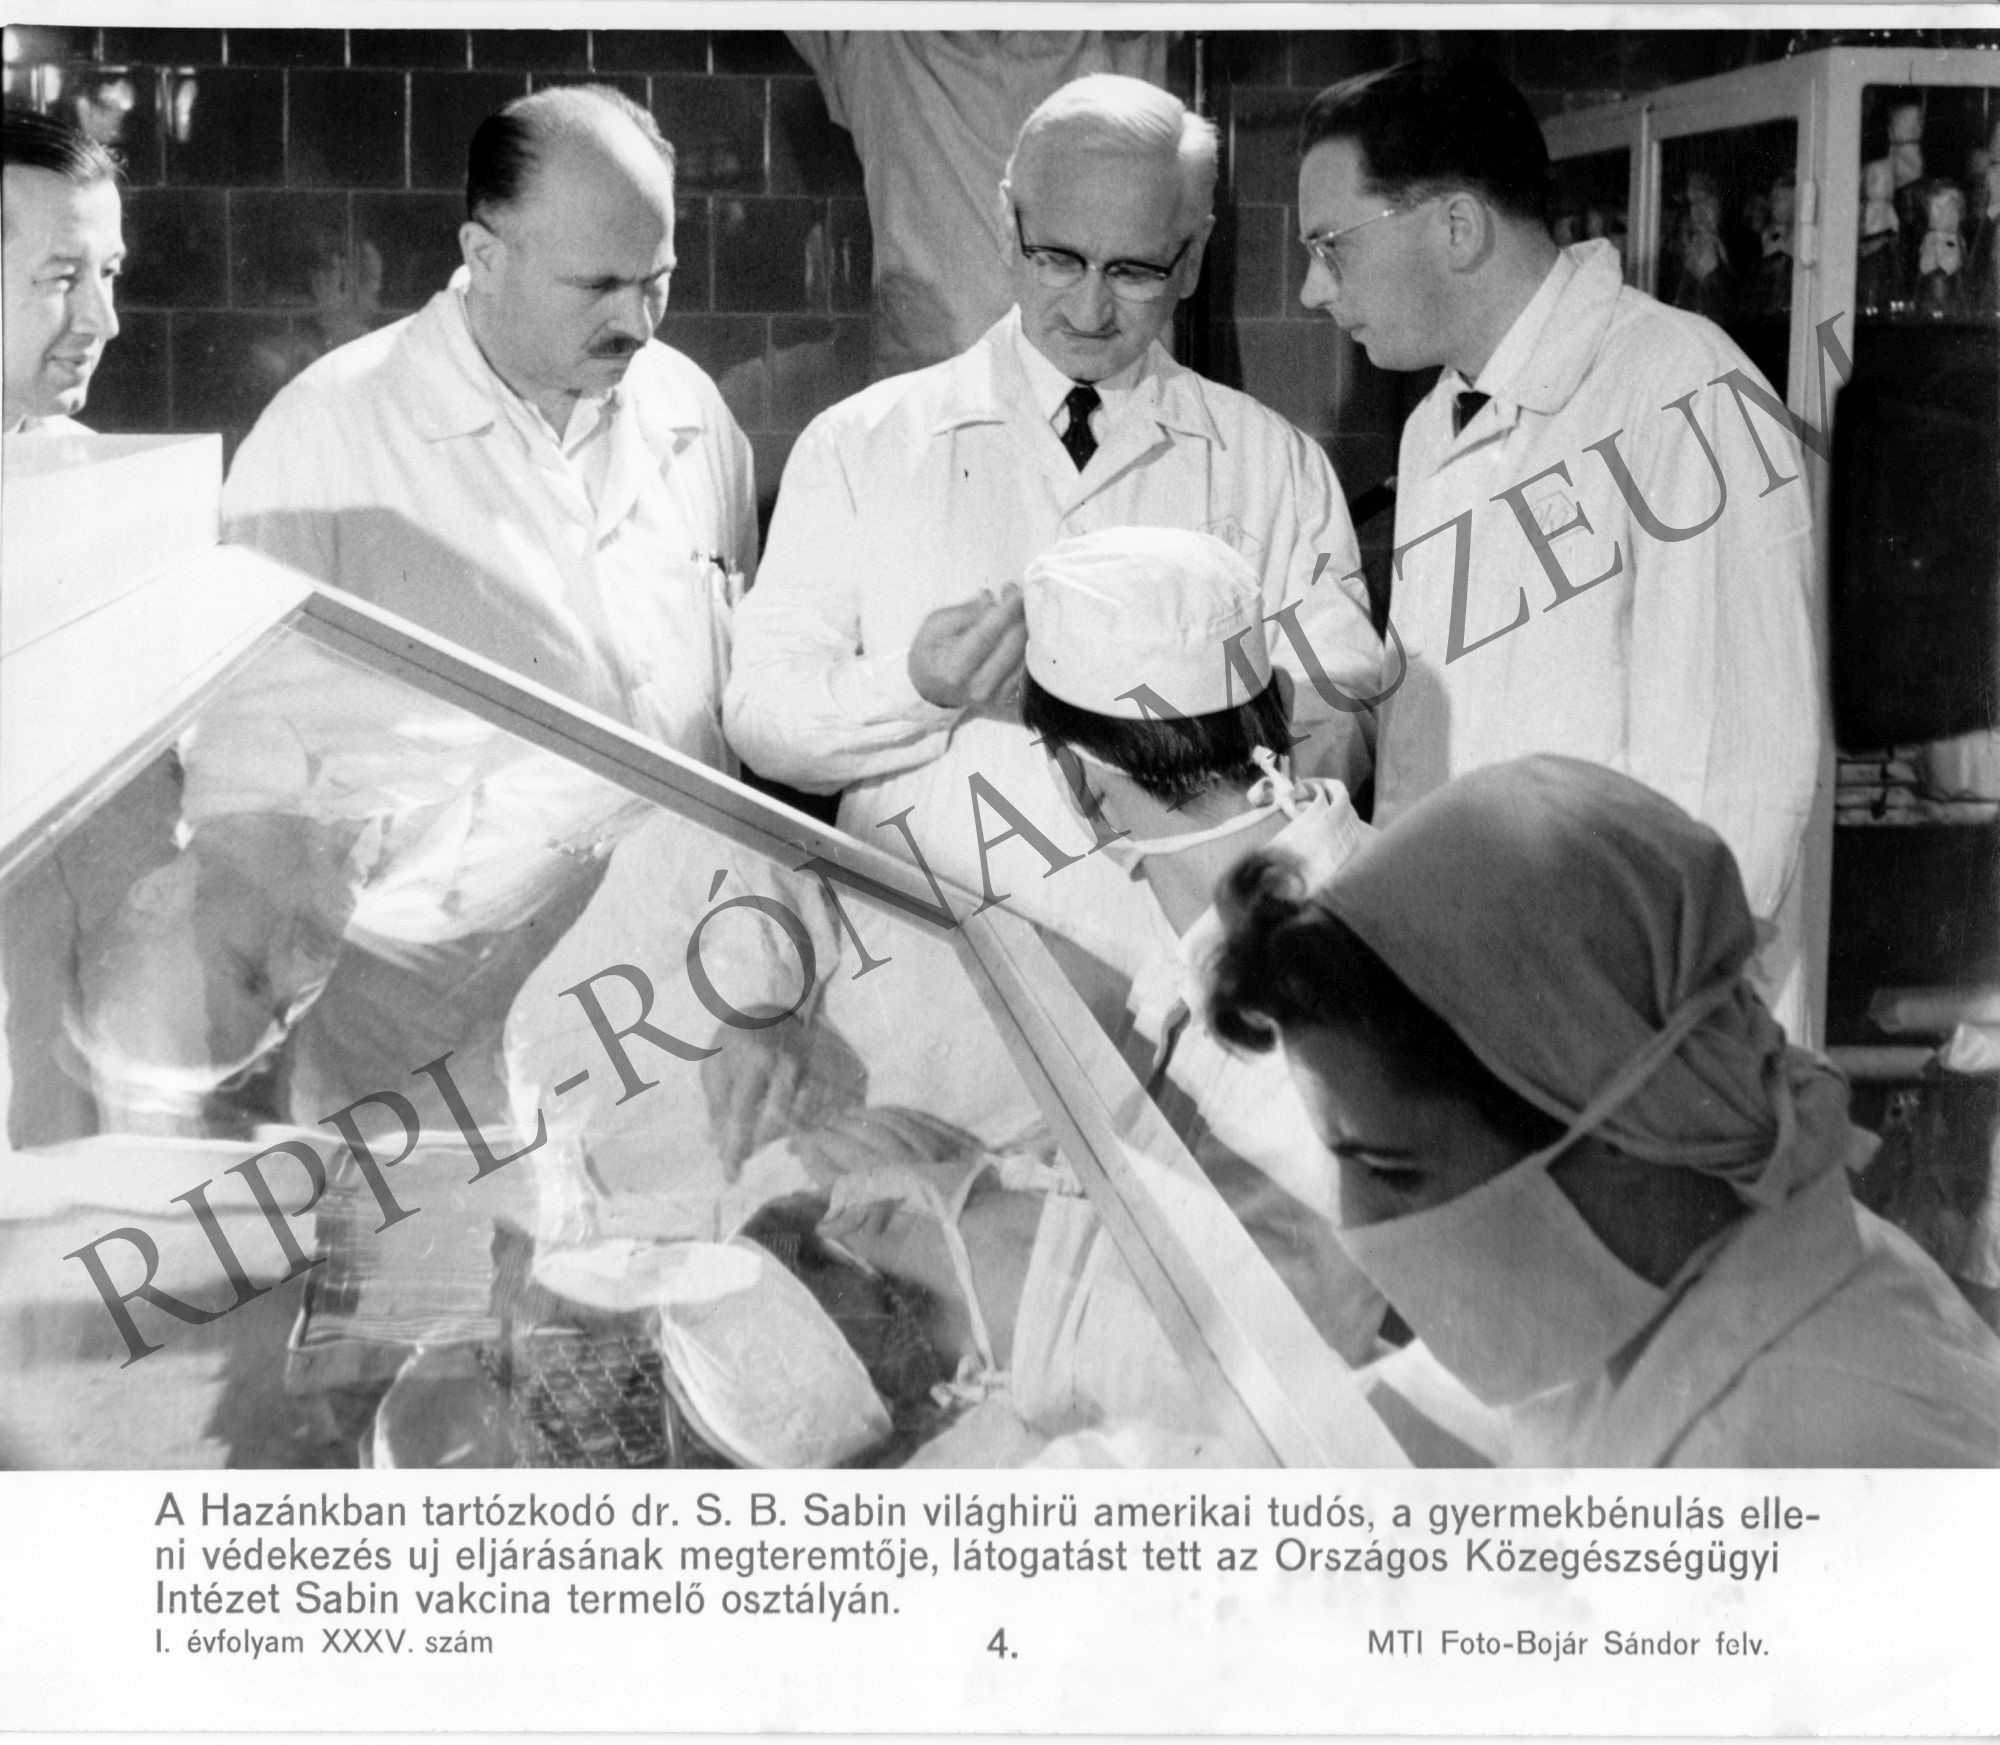 Dr. S. B. Sabin világhírű amerikai tudós látogatása az Országos Közegészségügyi Intézet Sabin vakcina termelő osztályán (Rippl-Rónai Múzeum CC BY-NC-SA)